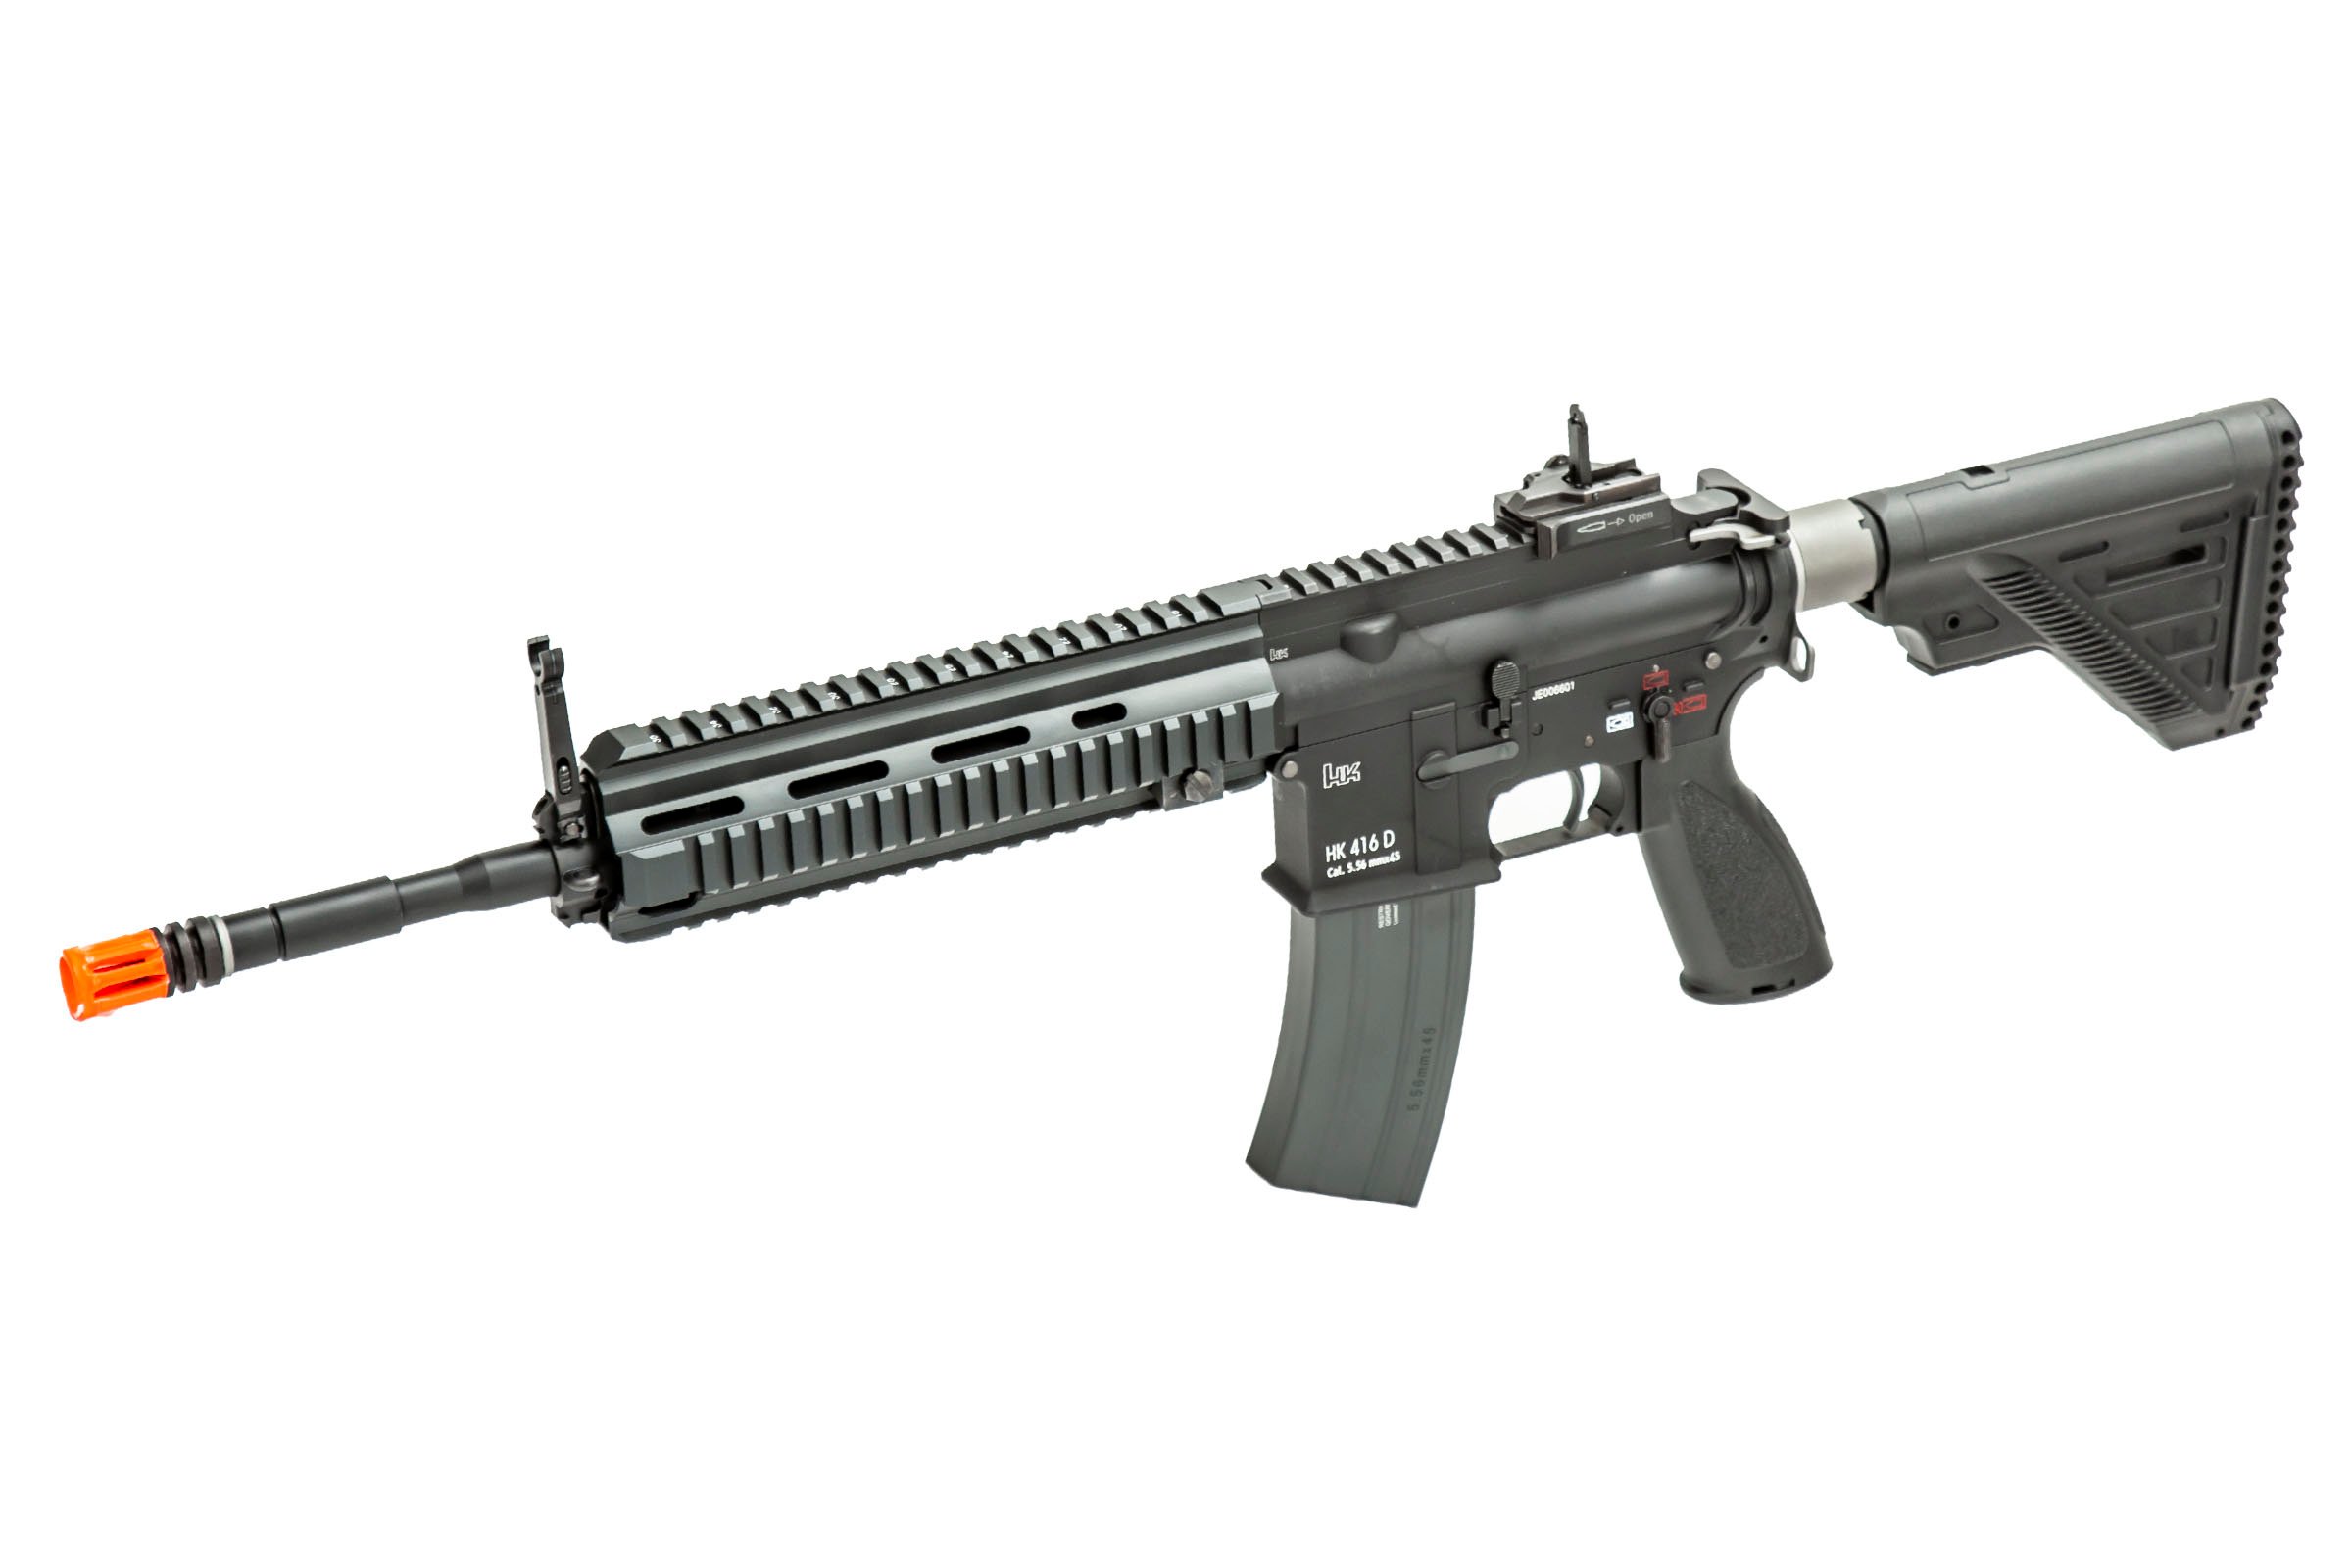 HK416 A4 GBB Rifle - Black (KWA) – Airsoft Atlanta